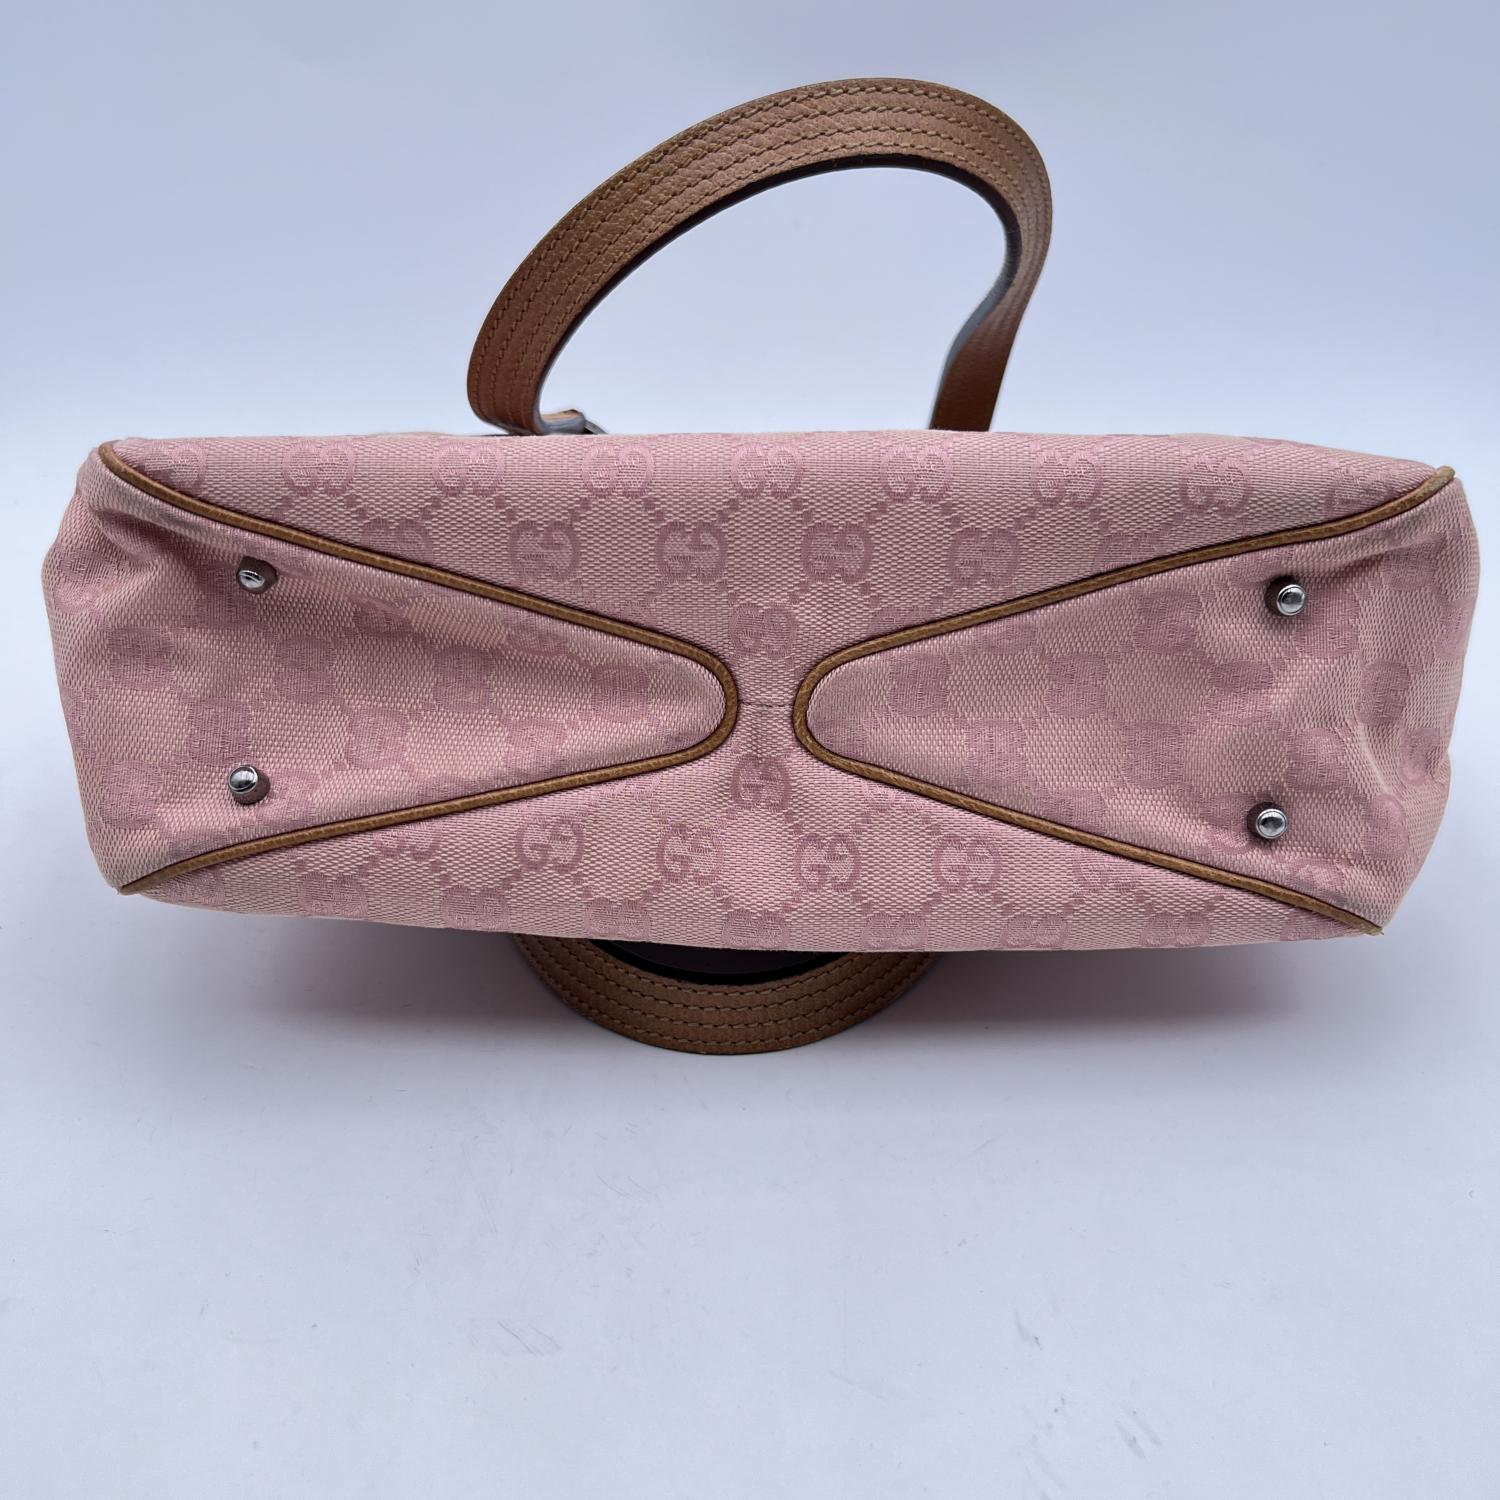 Gucci Pink Monogram Canvas Tote Handbag Shopping Bag 2